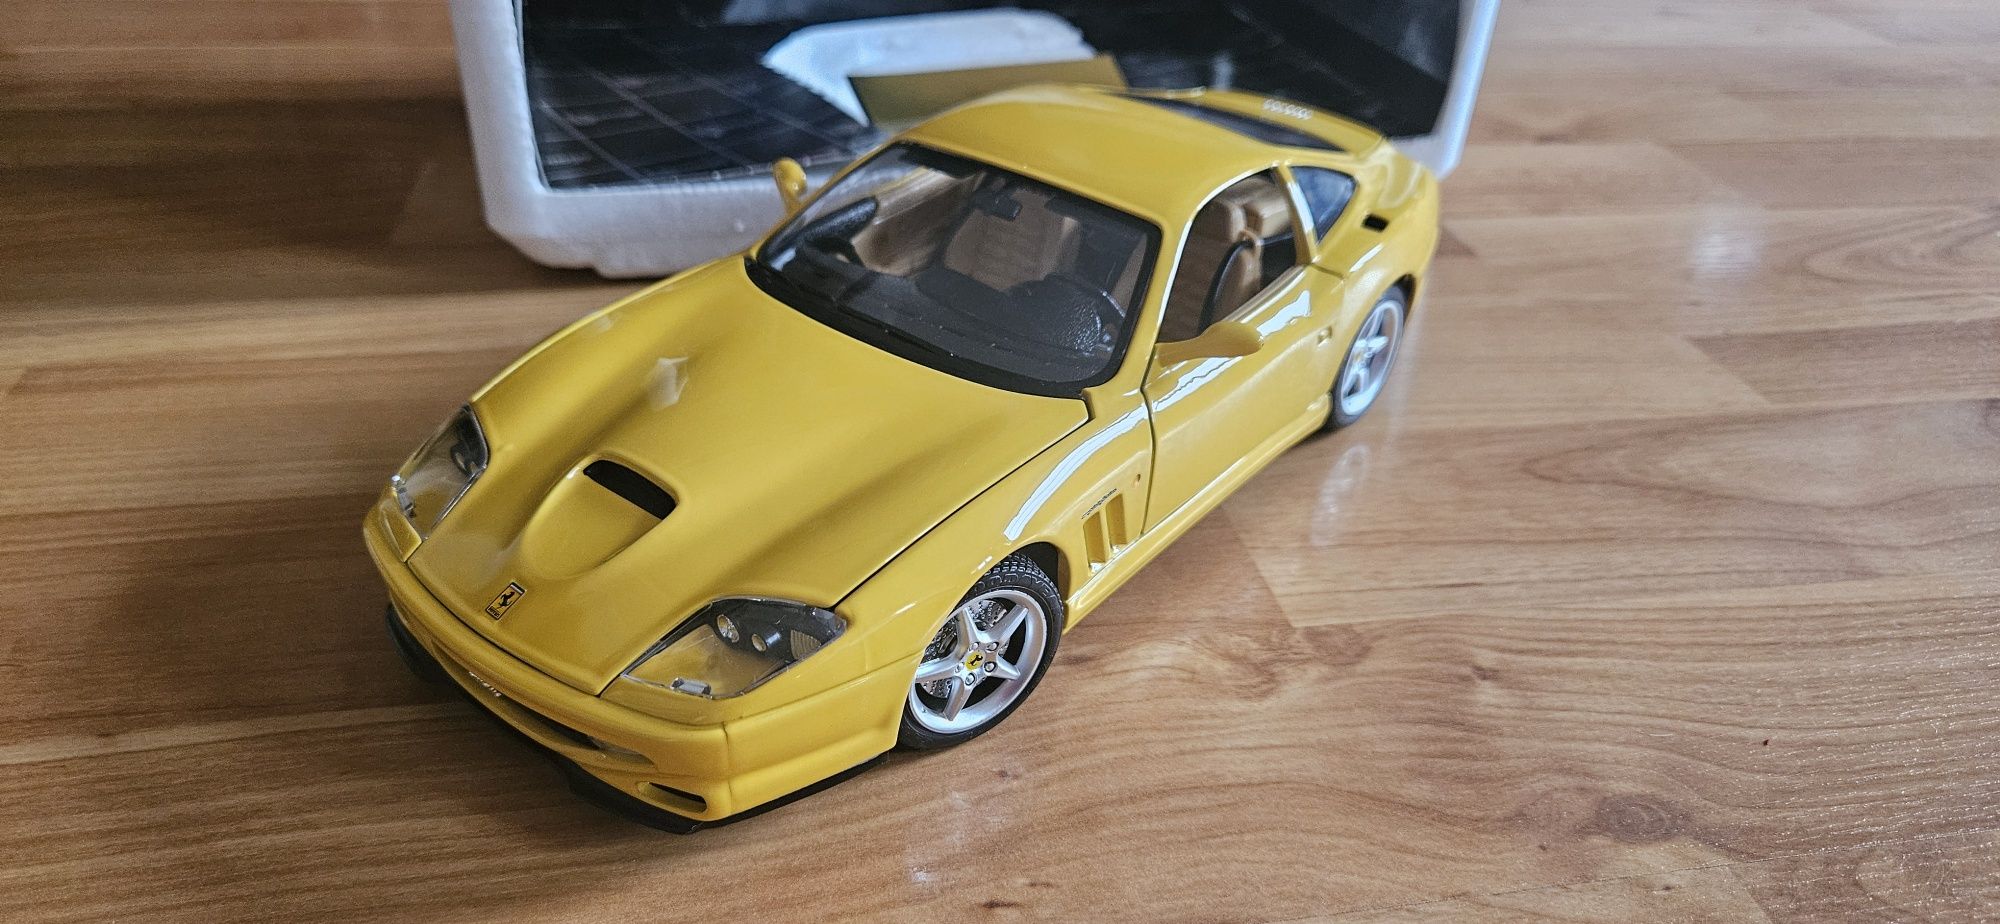 1:18 Burago Ferrari 550 Maranello